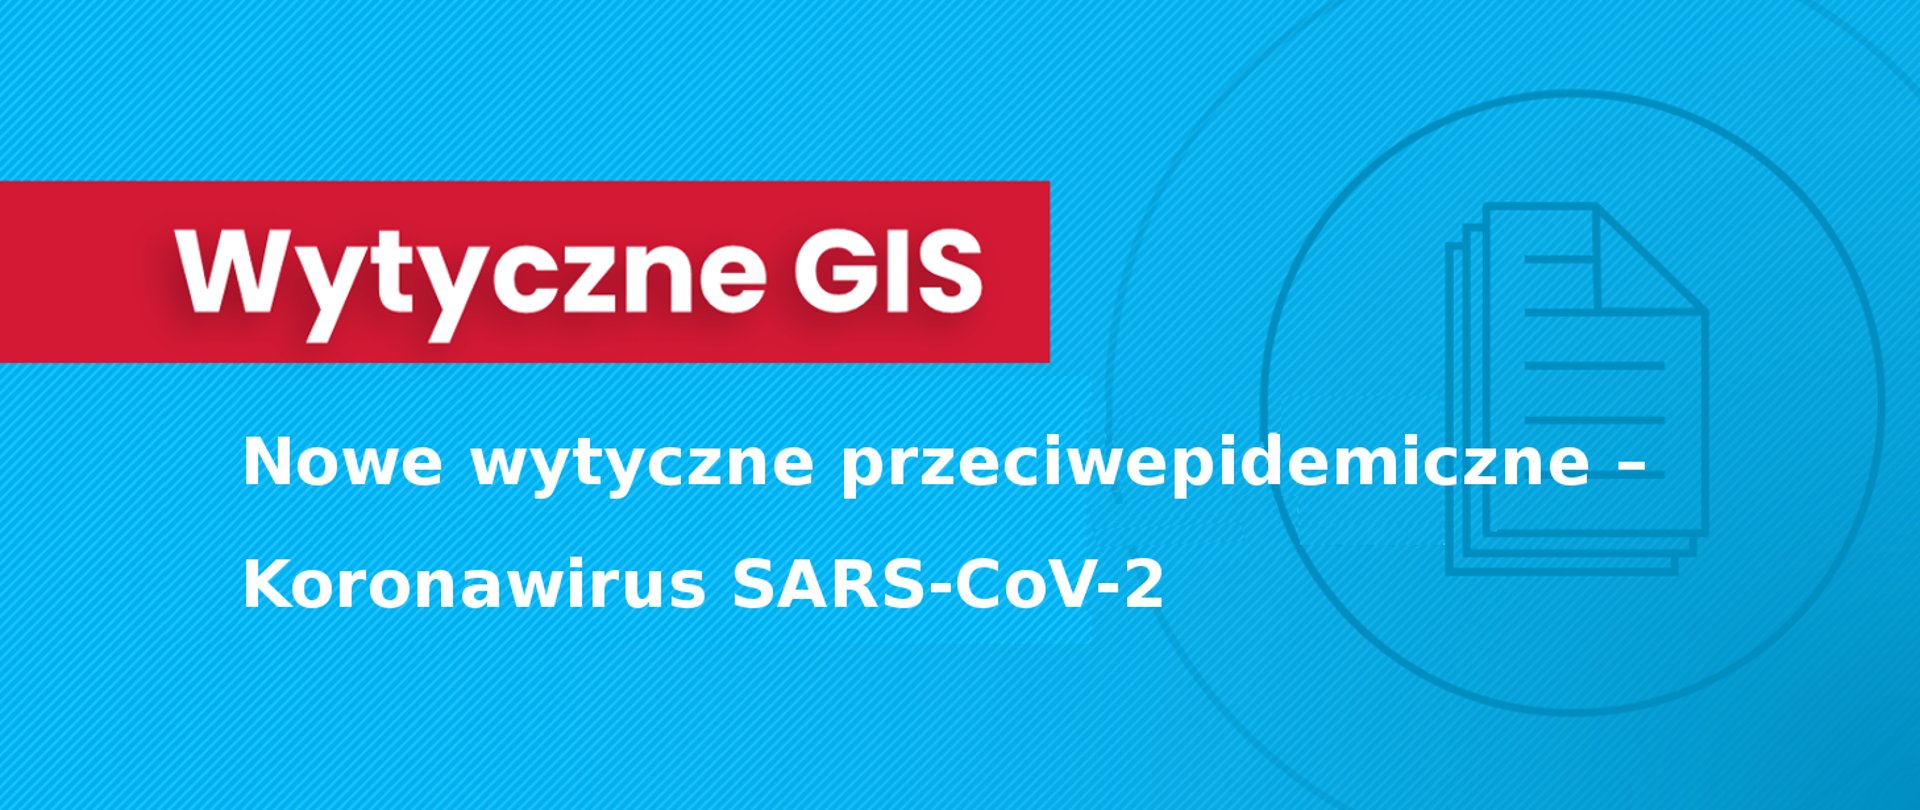 Wytyczne przeciwepidemiczne – Koronawirus SARS-CoV-2